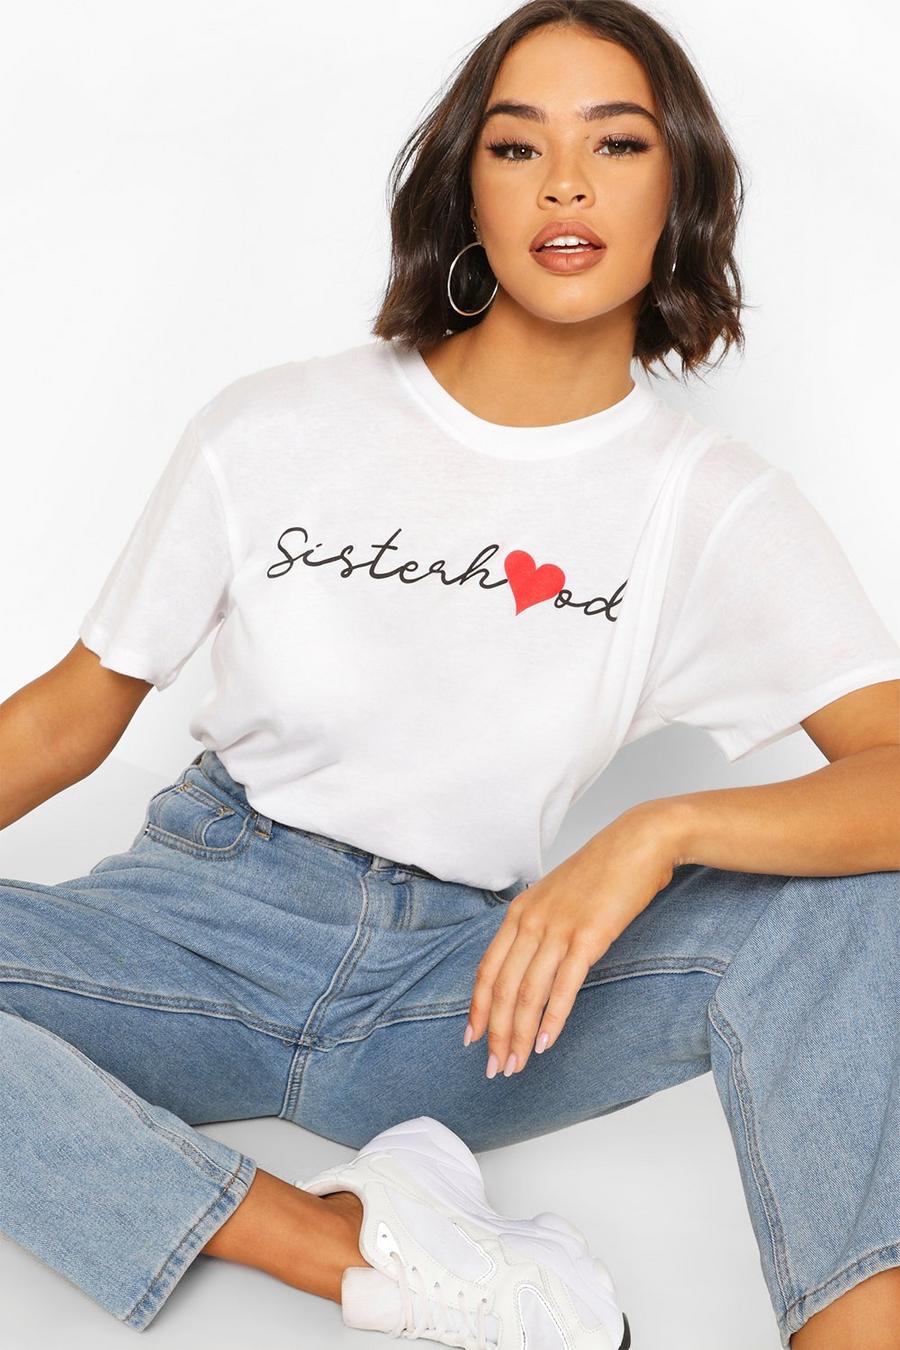 Camiseta con eslogan “Sisterhood” y estampado de corazón image number 1